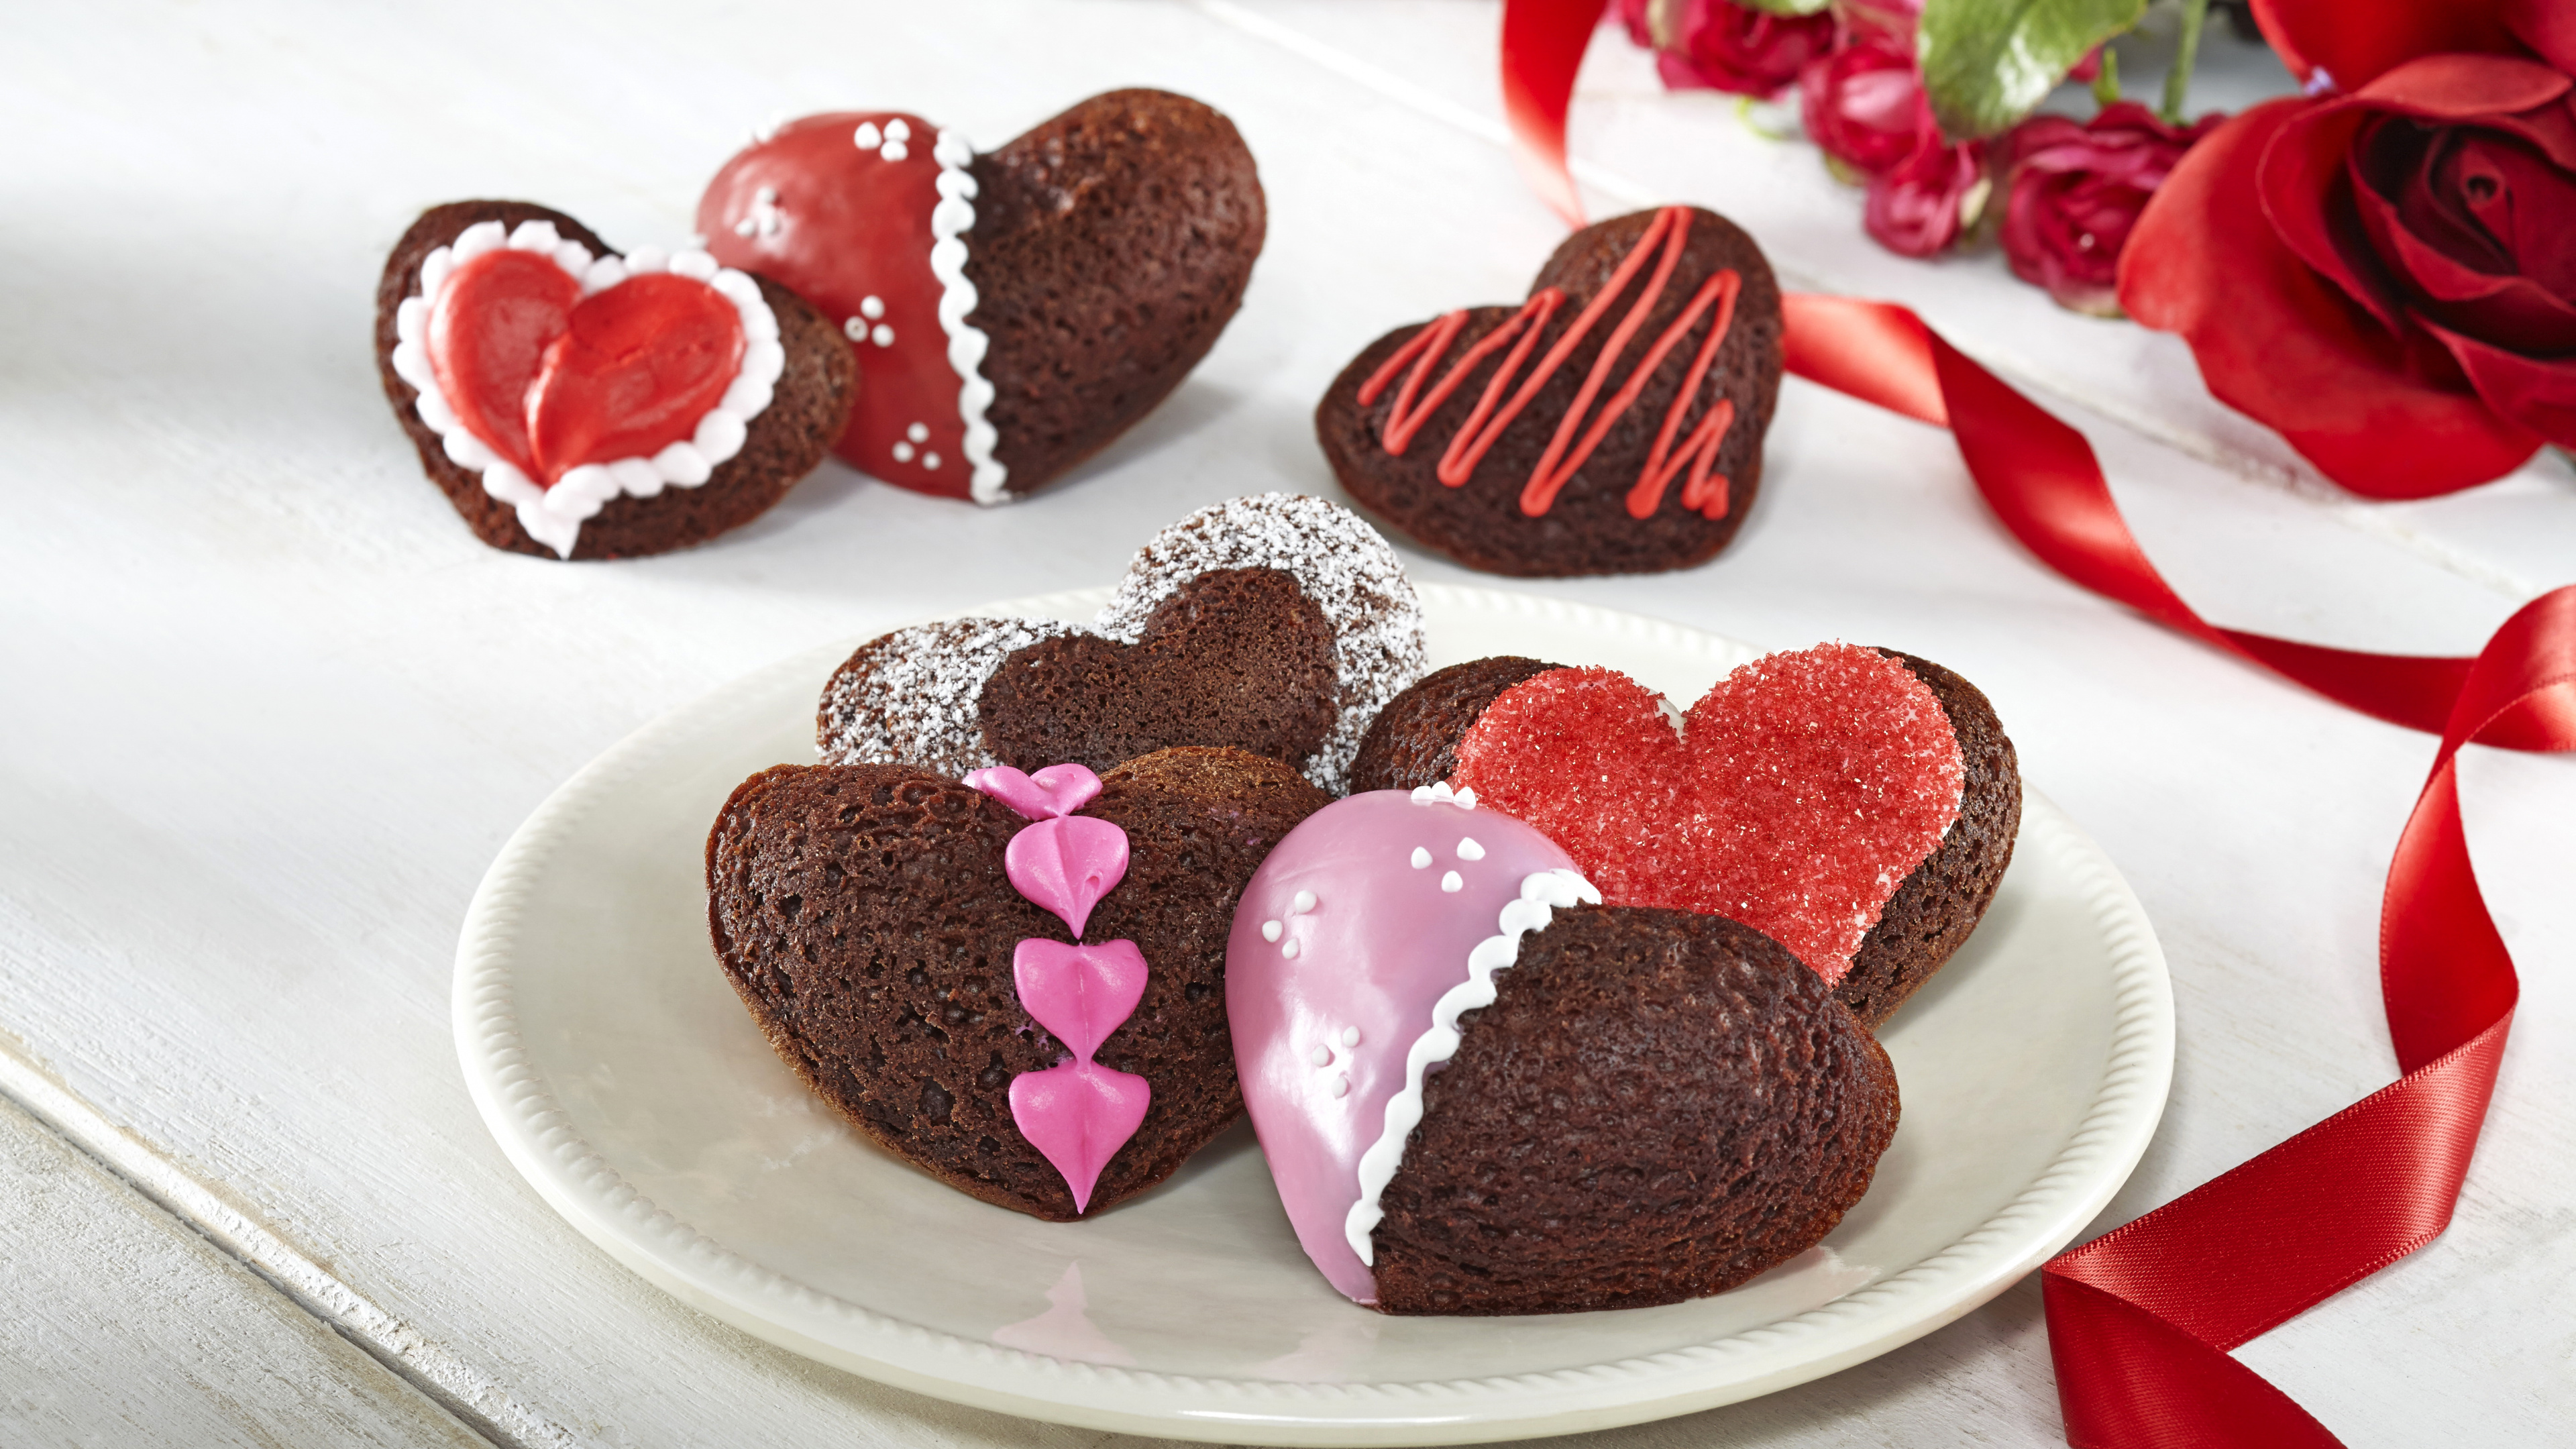 Schokoladenkuchen, Dessert, Valentines Tag, Schokolade, Lebensmittel. Wallpaper in 3840x2160 Resolution